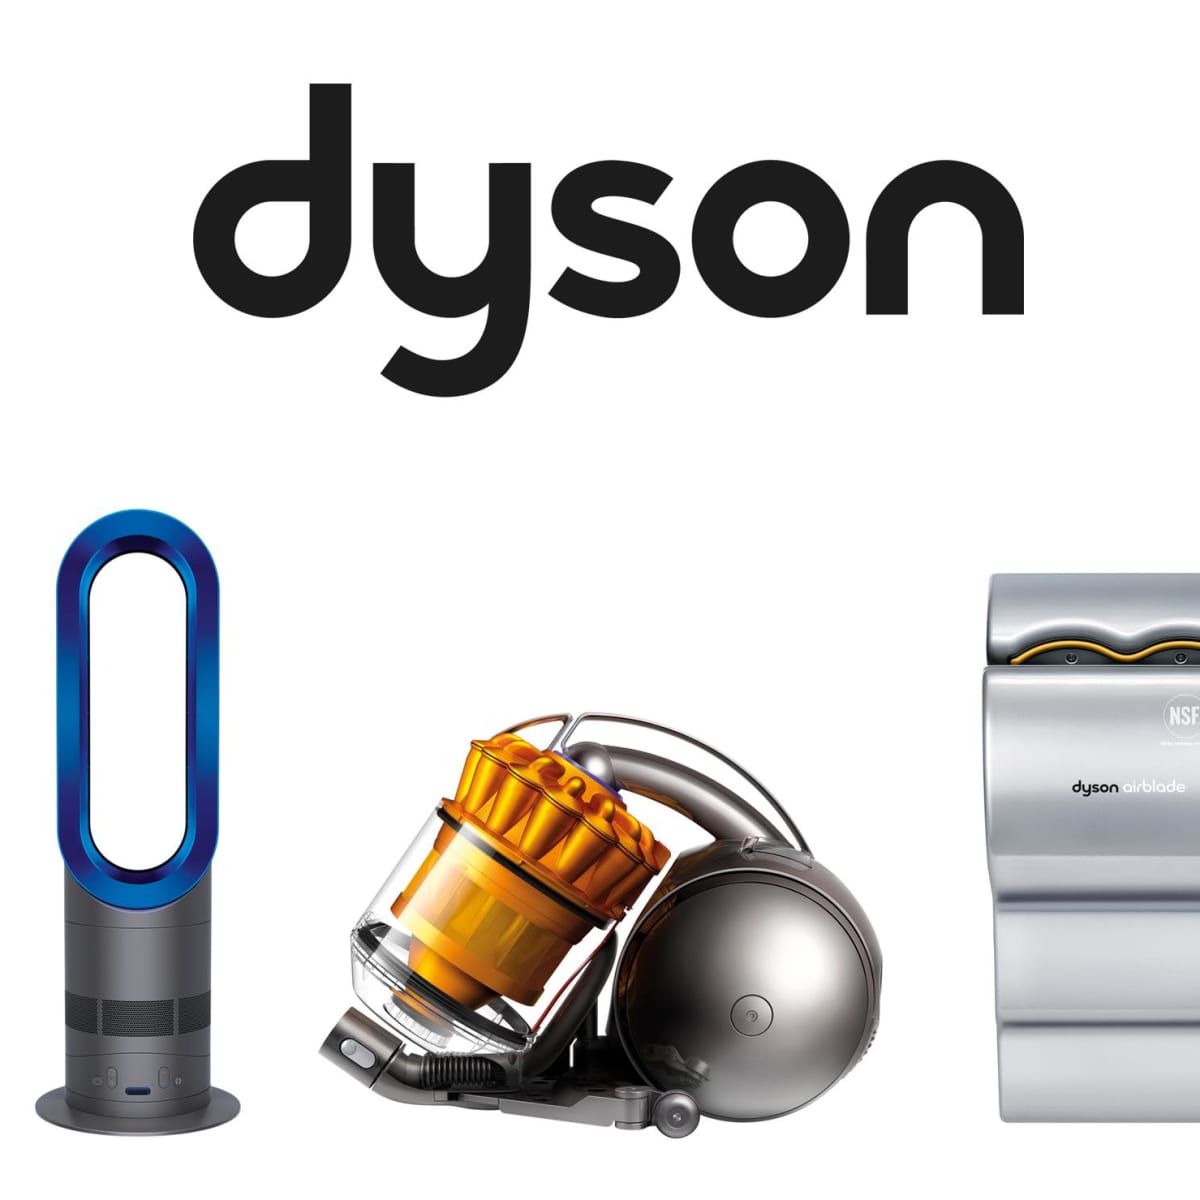 Продать дайсон. Dyson. Дайсон бренд. Дайсон логотип. Пылесос Dyson логотип.